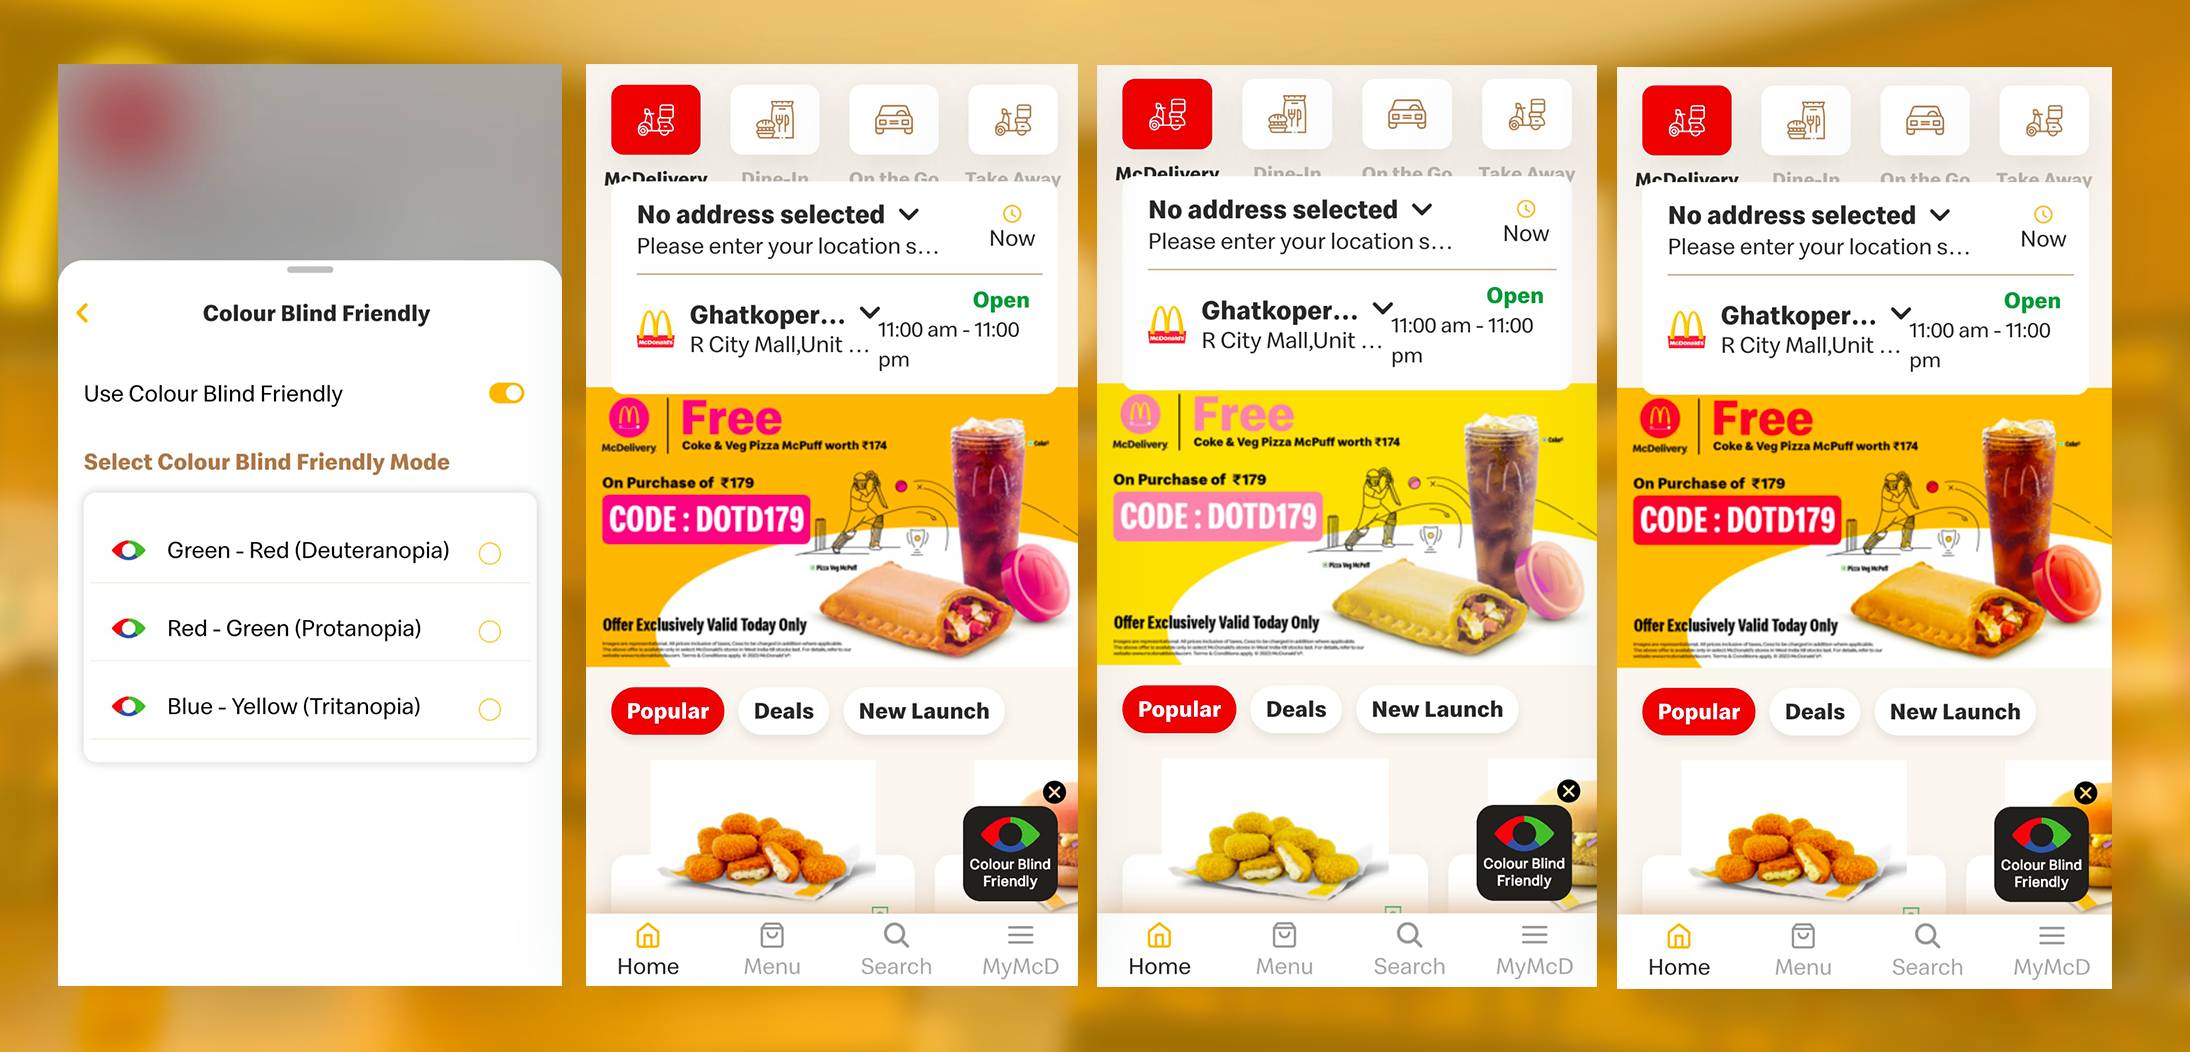 Η φιλική προς τα αχρωματοψία εφαρμογή διαθέτει McDonald's για τη βελτίωση της εμπειρίας των πελατών